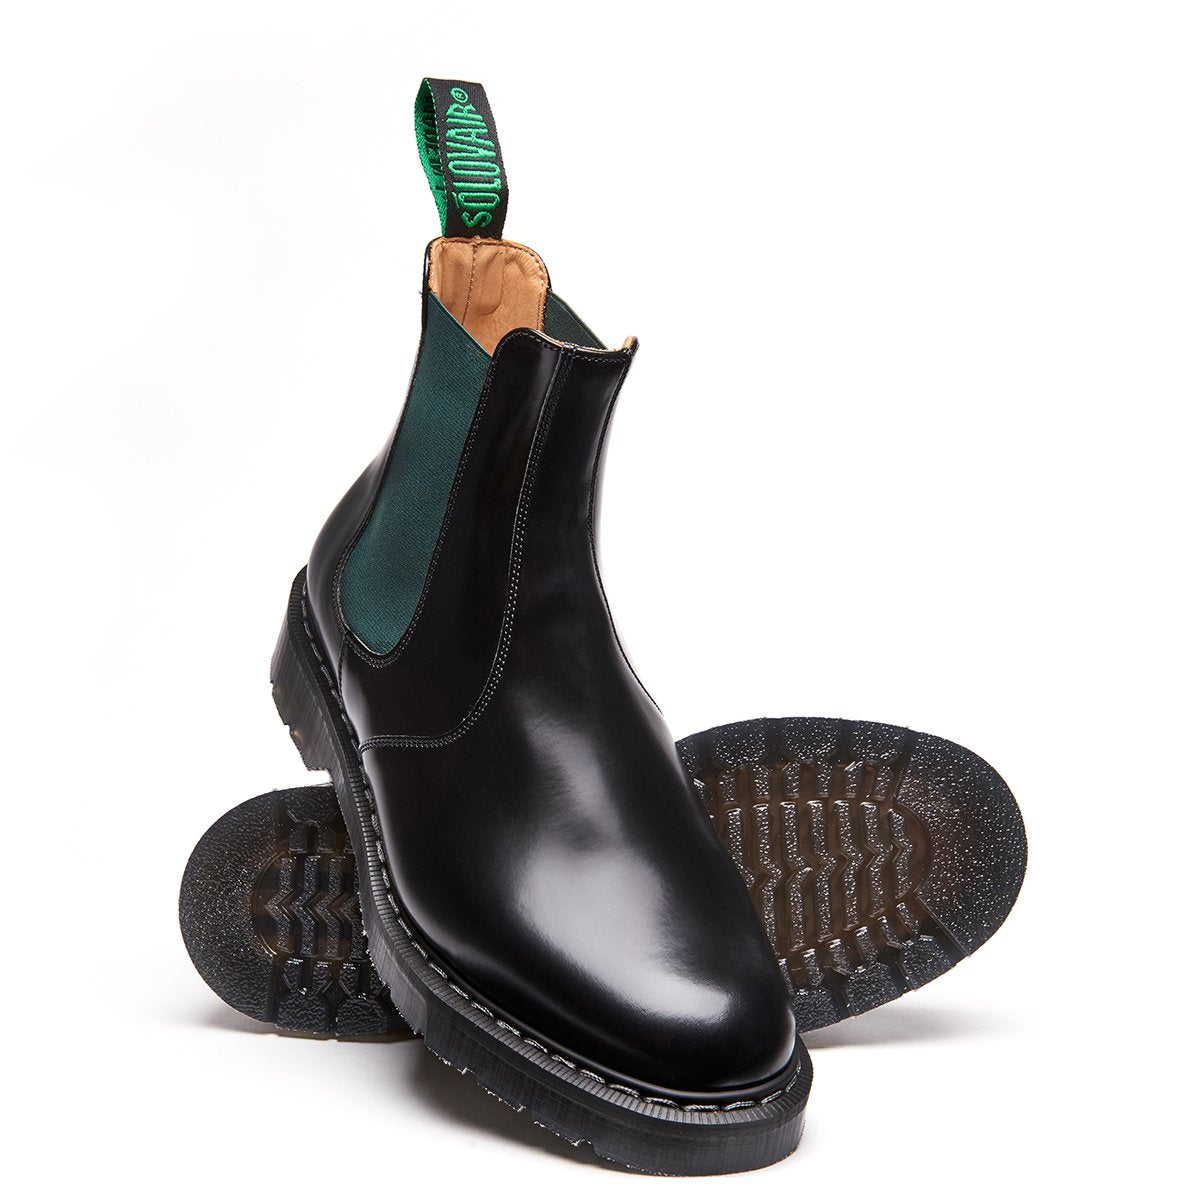 Green & Black Dealer Boot | Solovair | Handmade in England – NPS